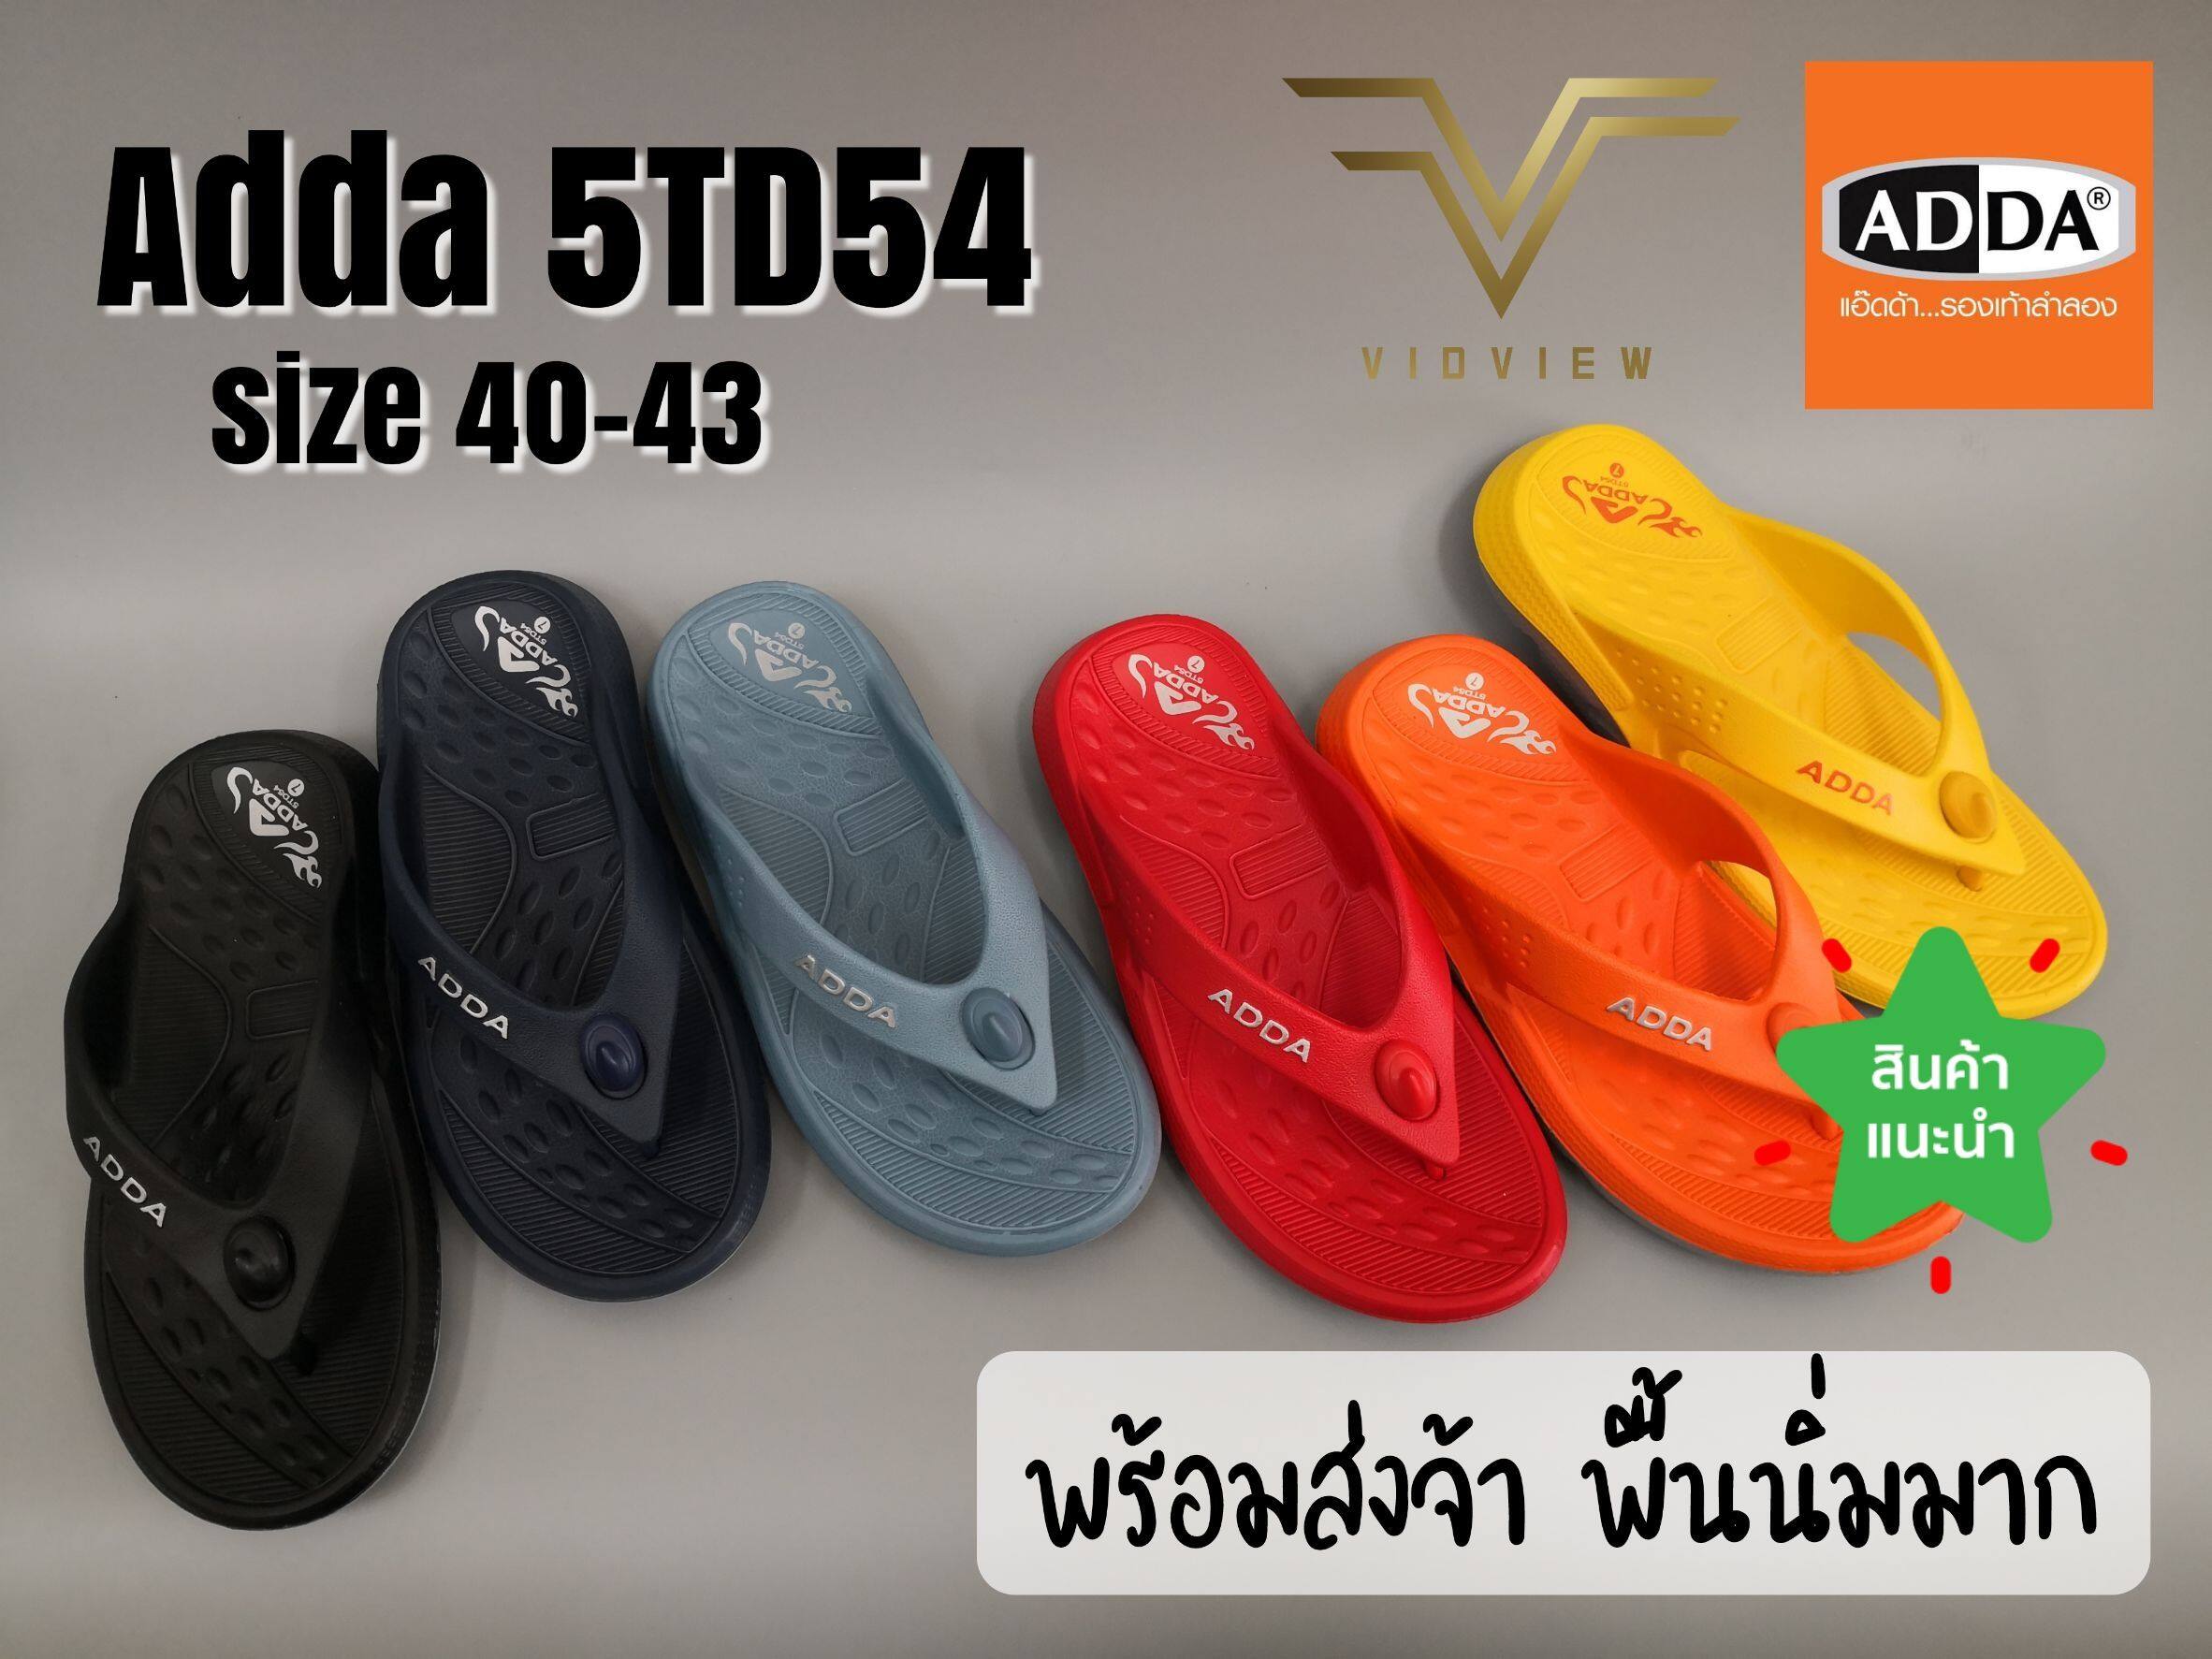 VIDVIEW !!ลดสนั่น!! รองเท้าแตะ แบบหนีบ Adda 5TD54 หลายสี ไซส์ 40-43 พื้น 2Density นุ่มมาก รองเท้าใส่สบาย